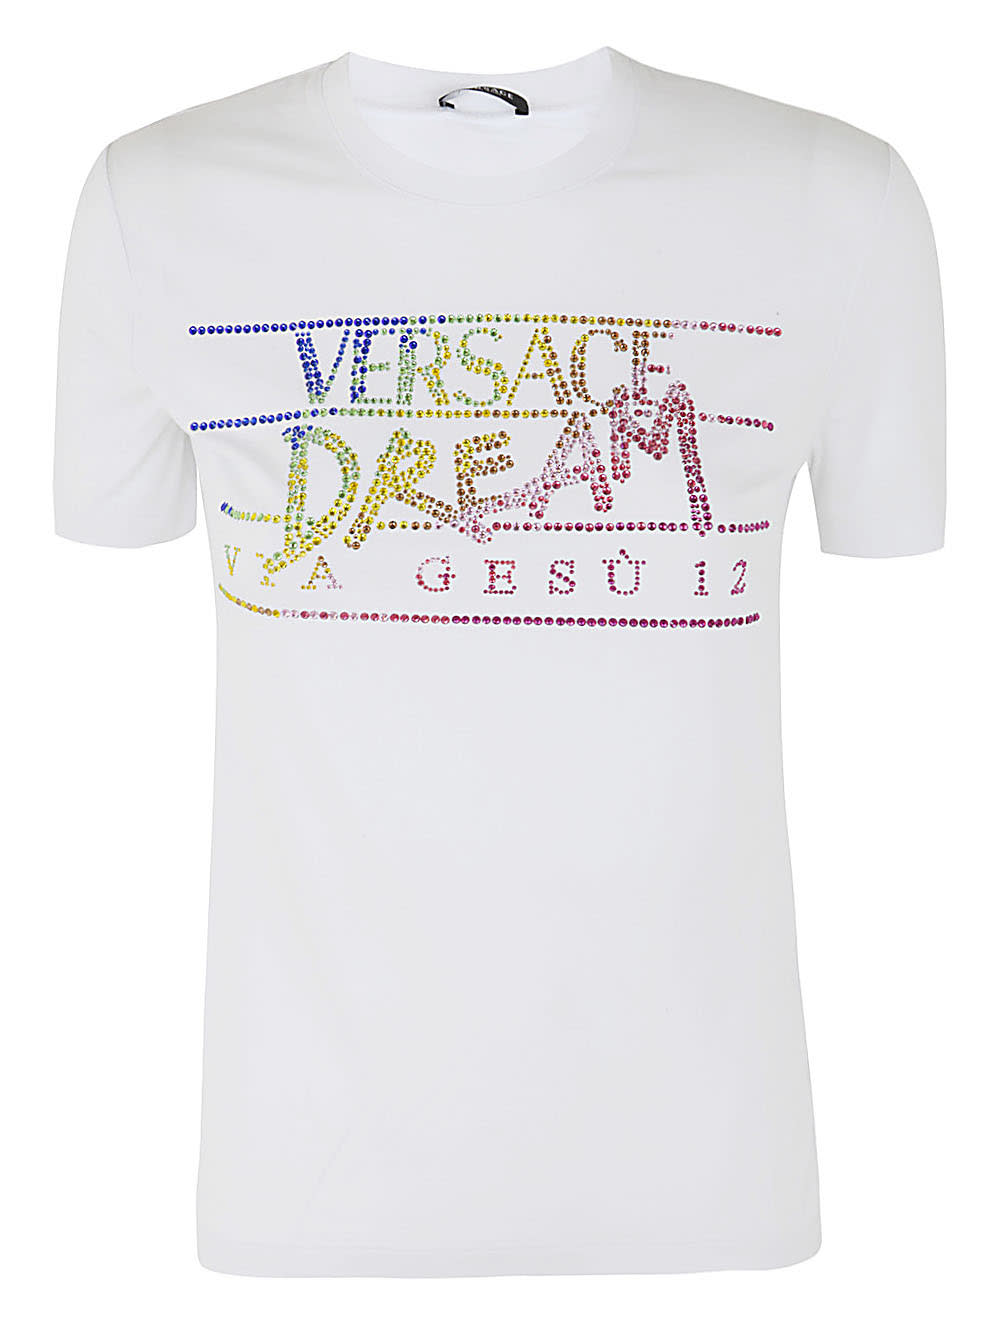 Versace Logo T Shirt